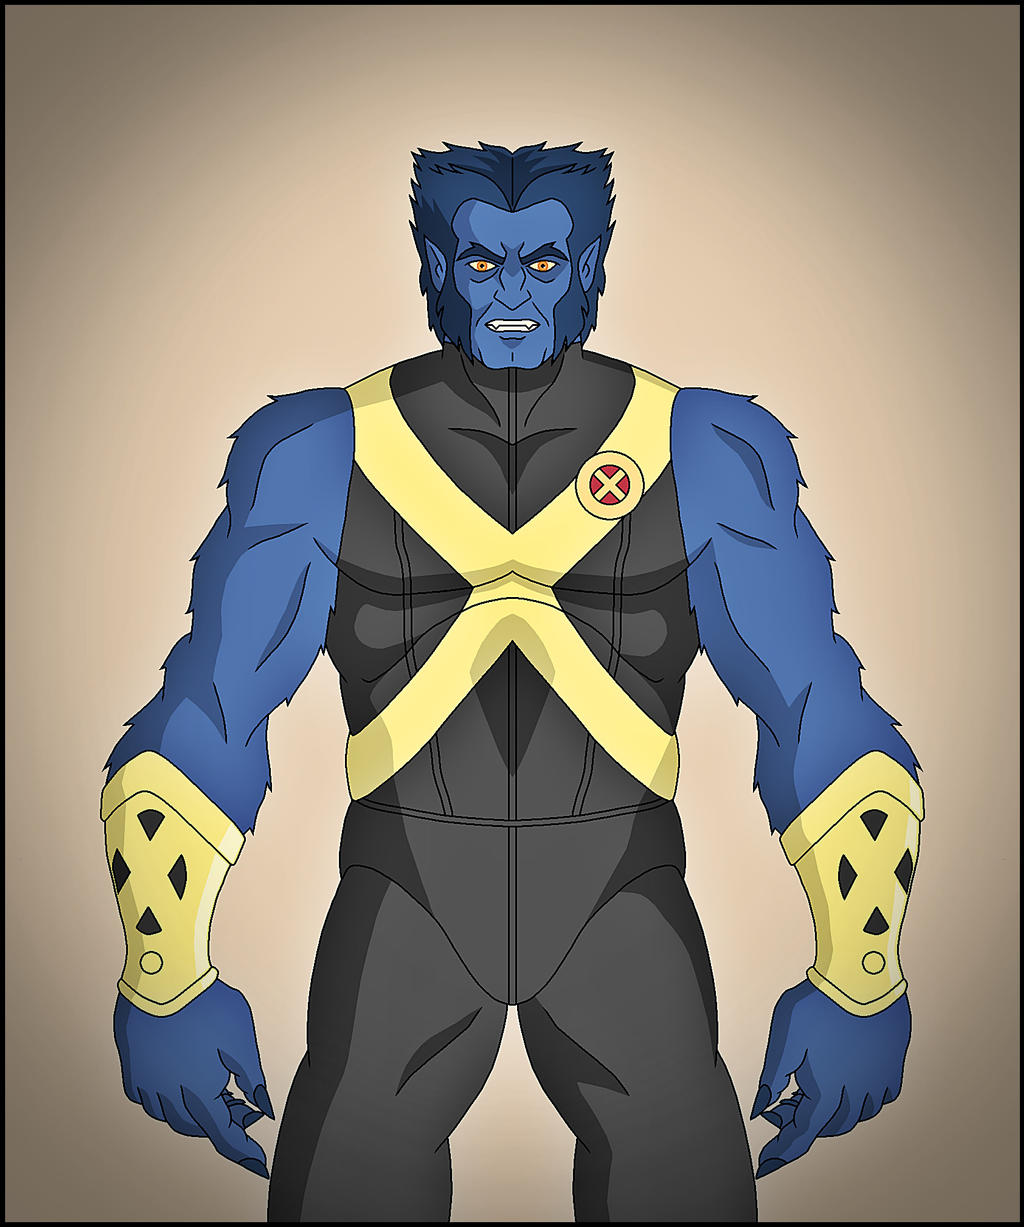 Beast - X-Men by DraganD on DeviantArt